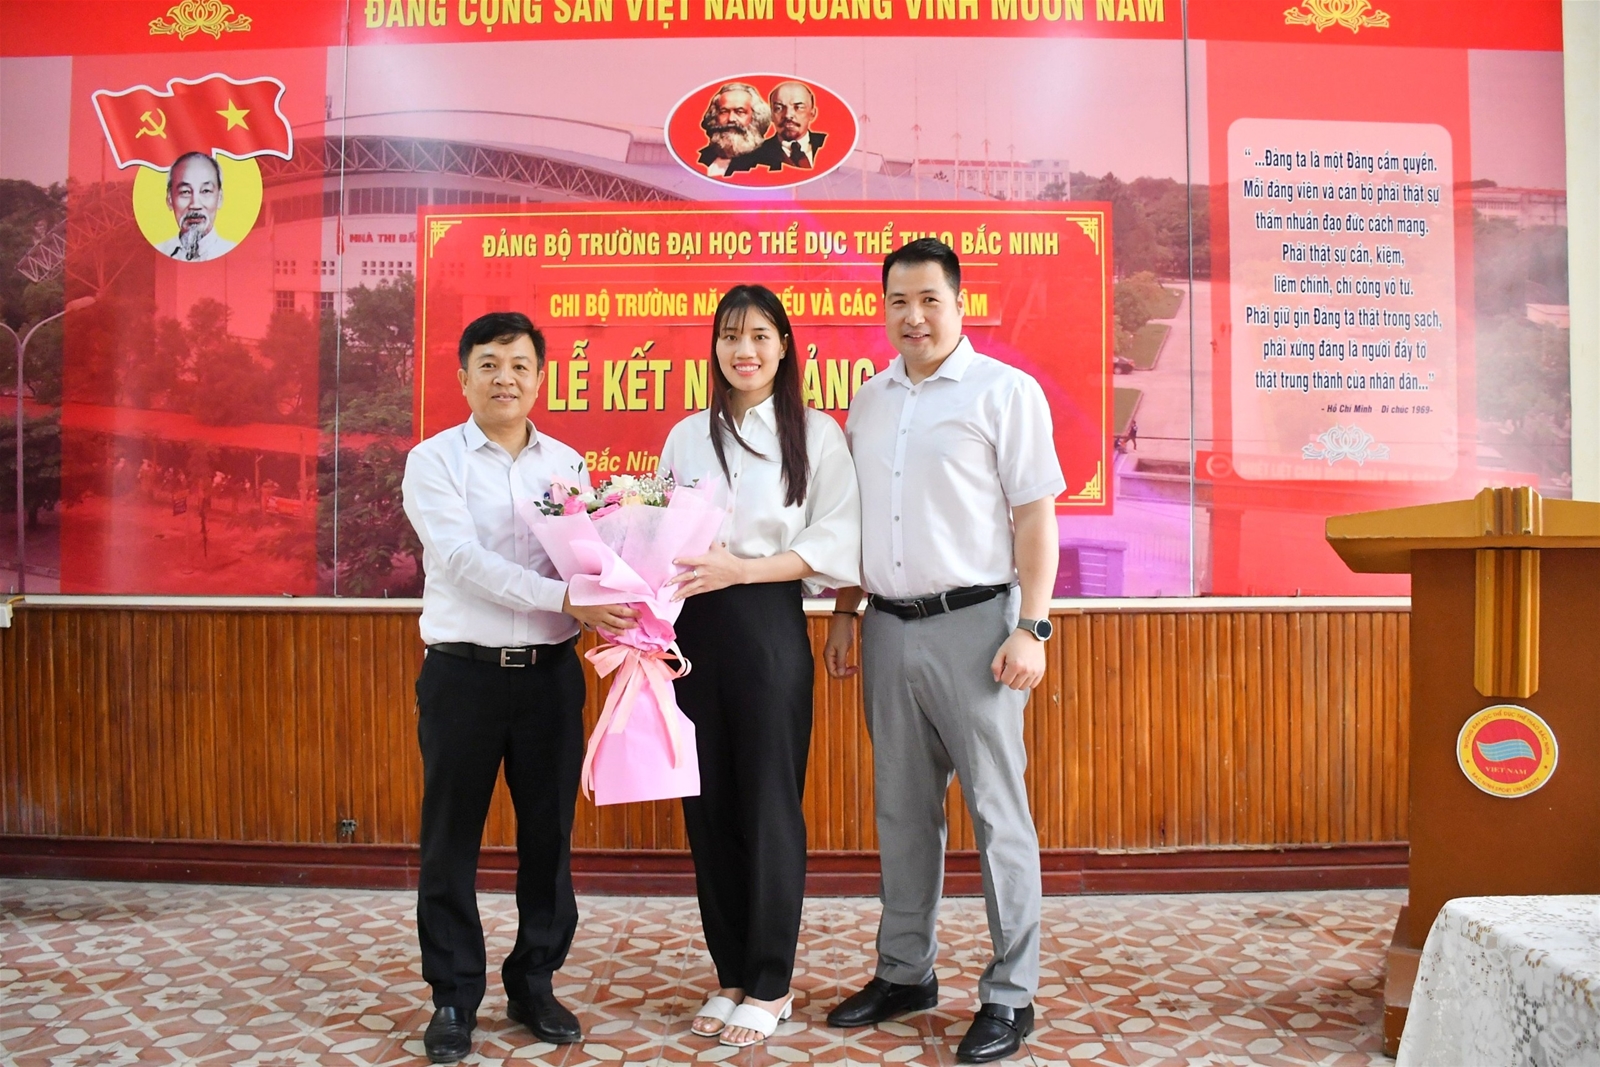 Lễ kết nạp Đảng viên cho VĐV Đinh Thị Phương Hồng thuộc chi bộ trường Năng khiếu và các trung tâm